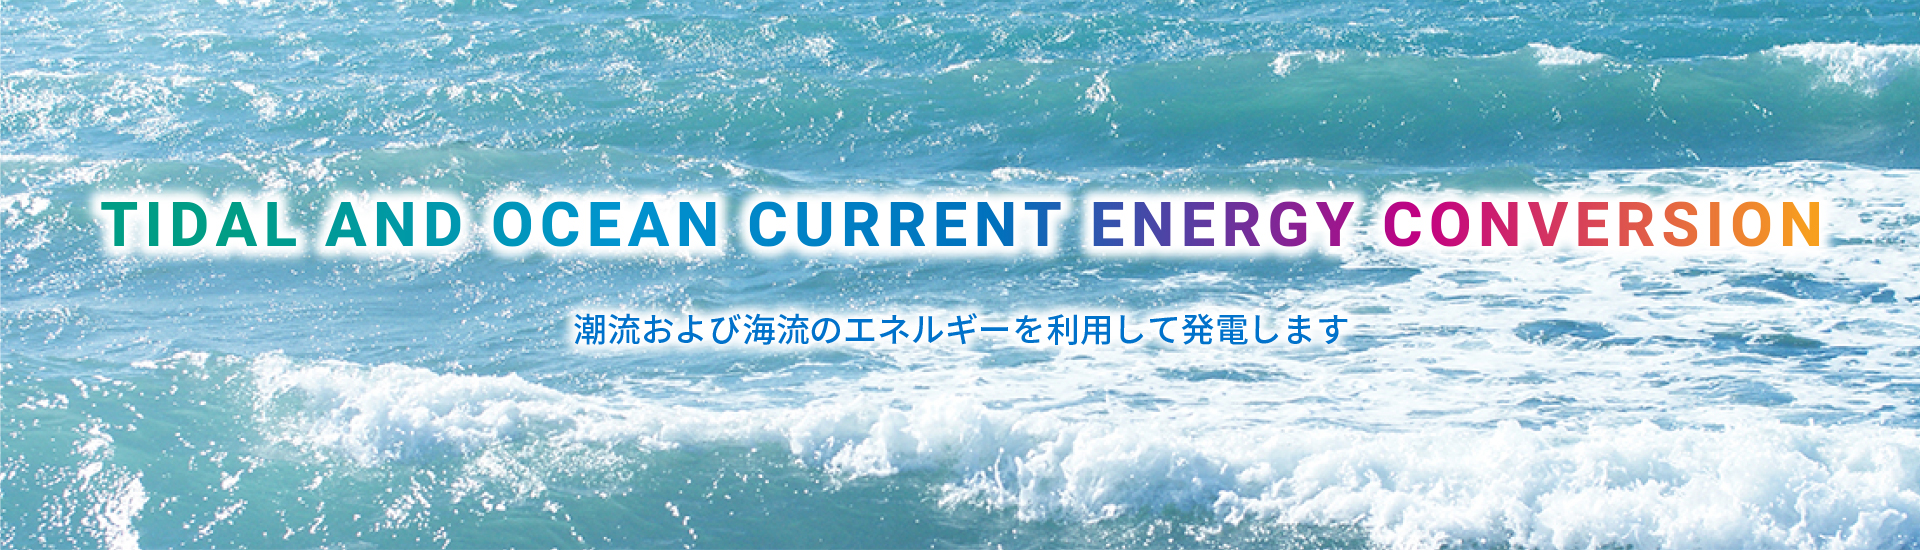 潮流・海流エネルギー